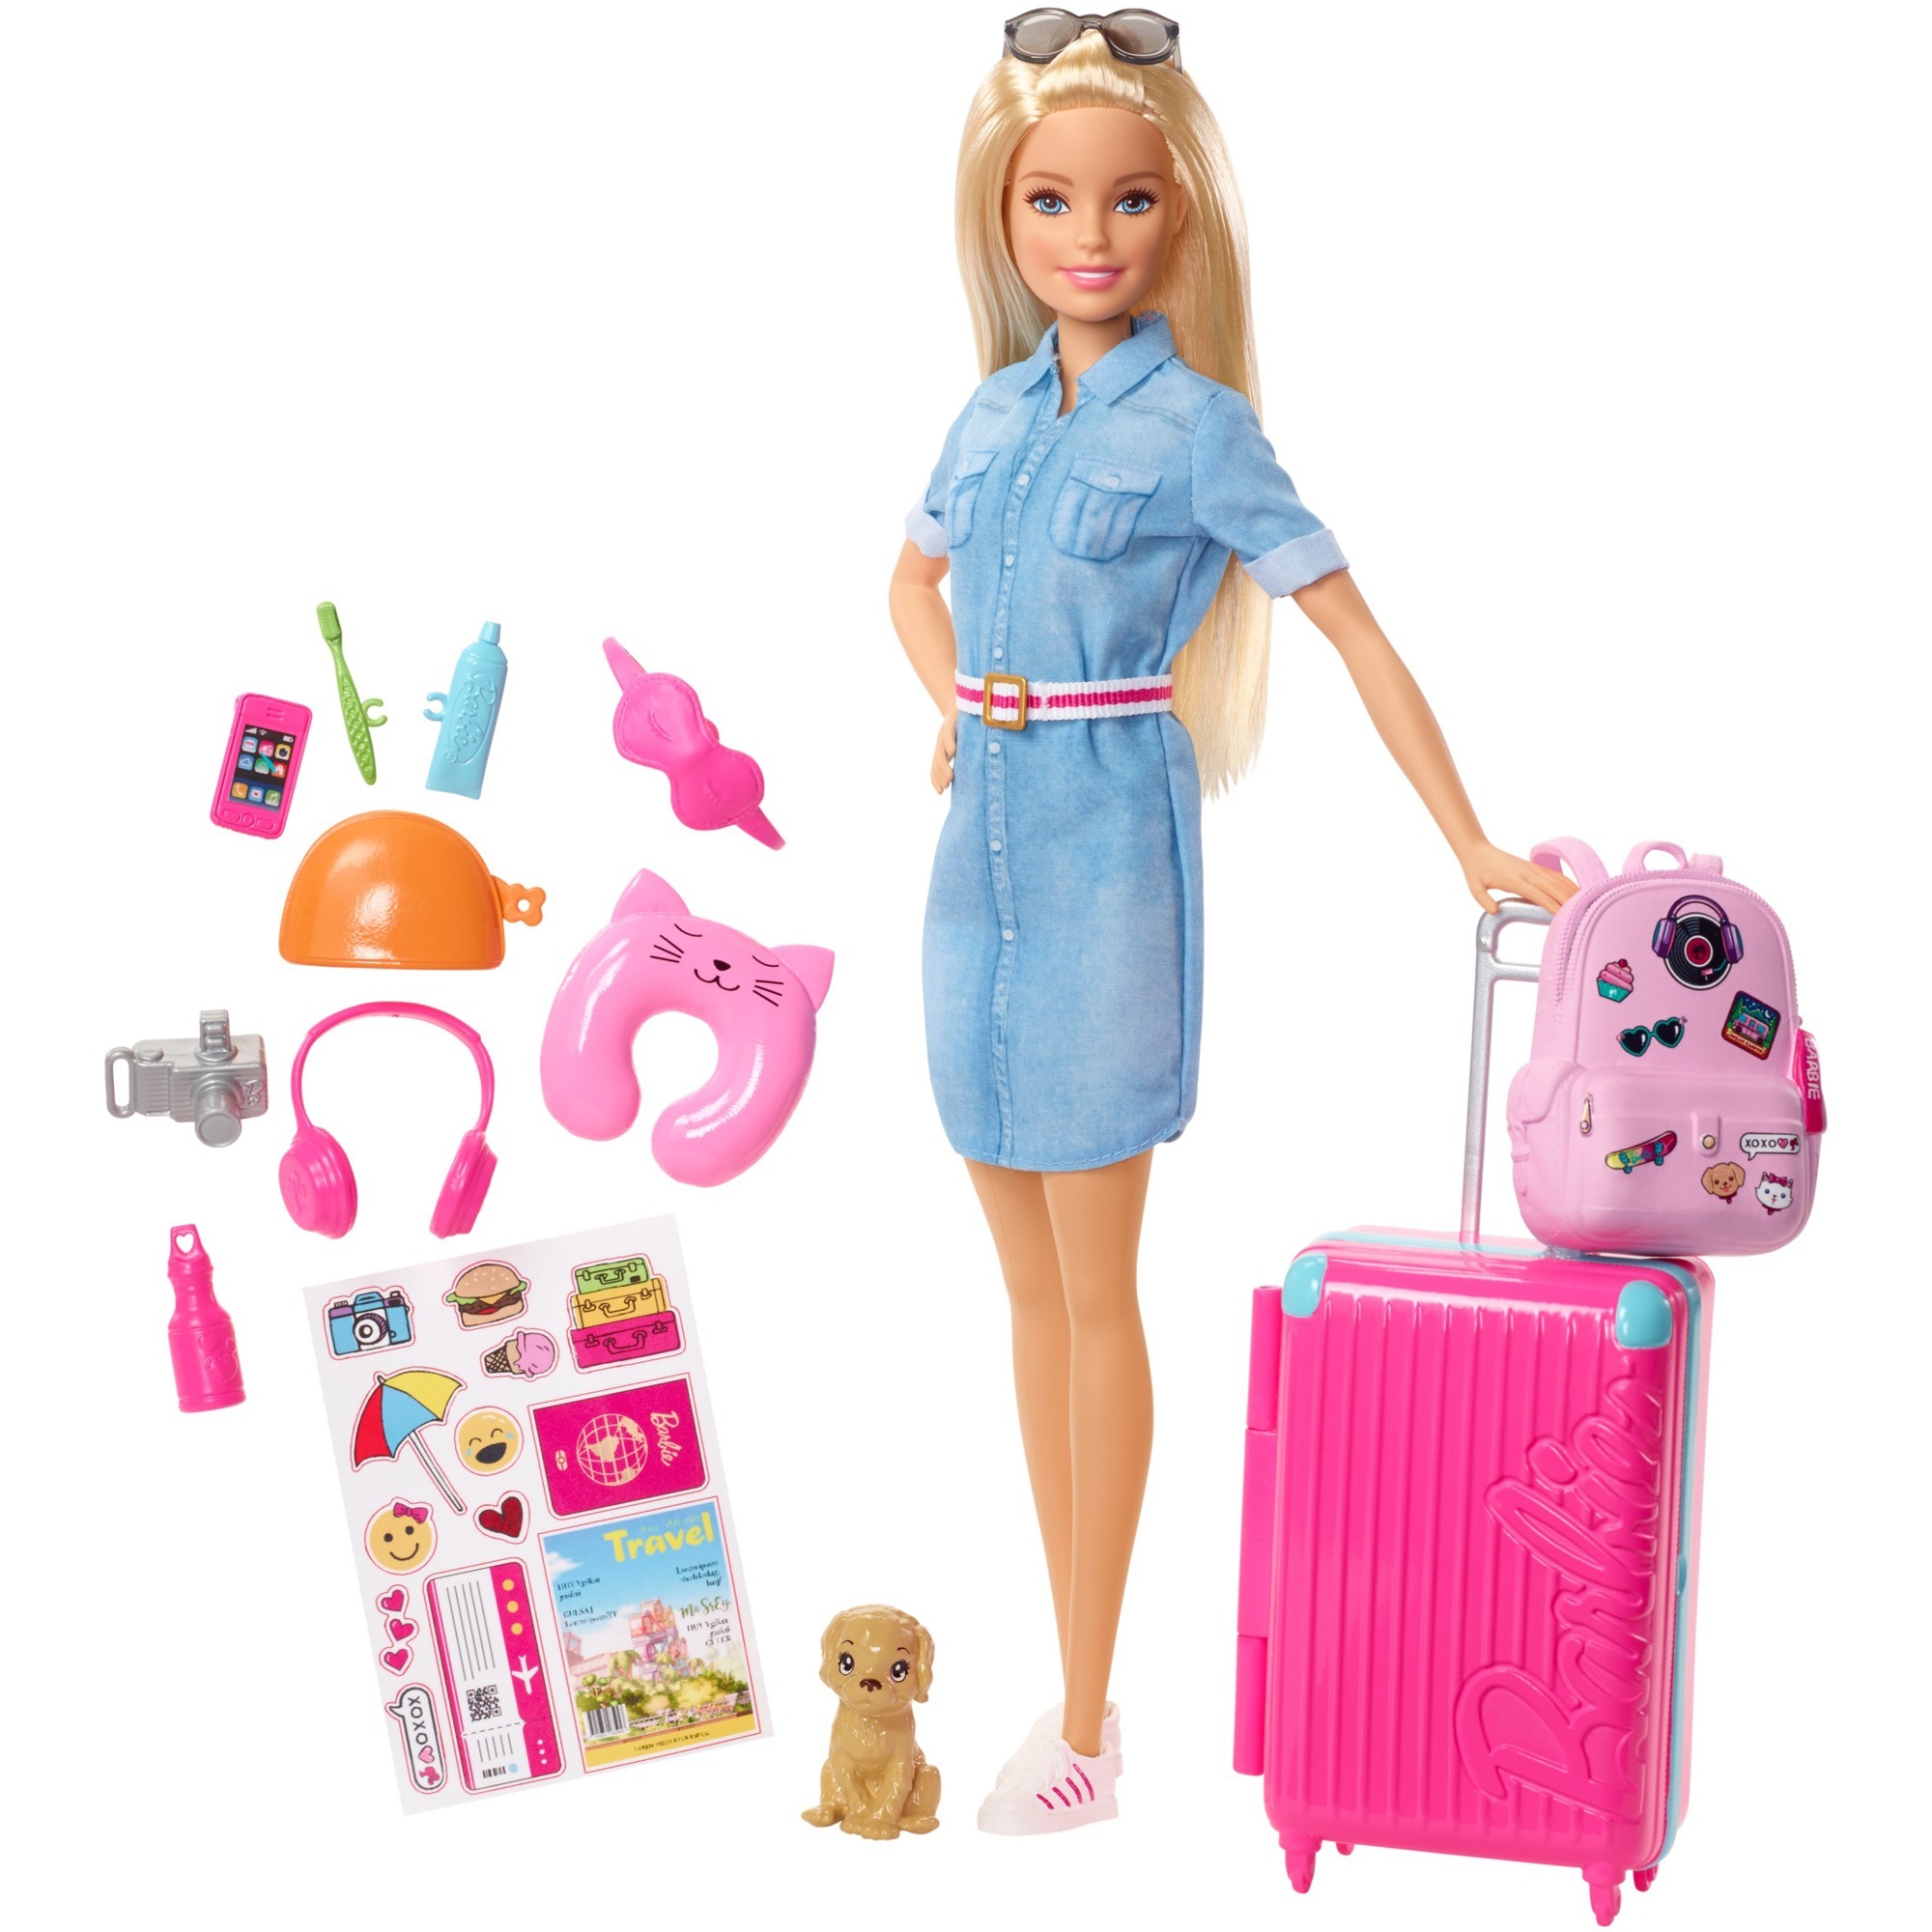 Image of Alternate - Barbie Reise Puppe (blond) und Zubehör online einkaufen bei Alternate